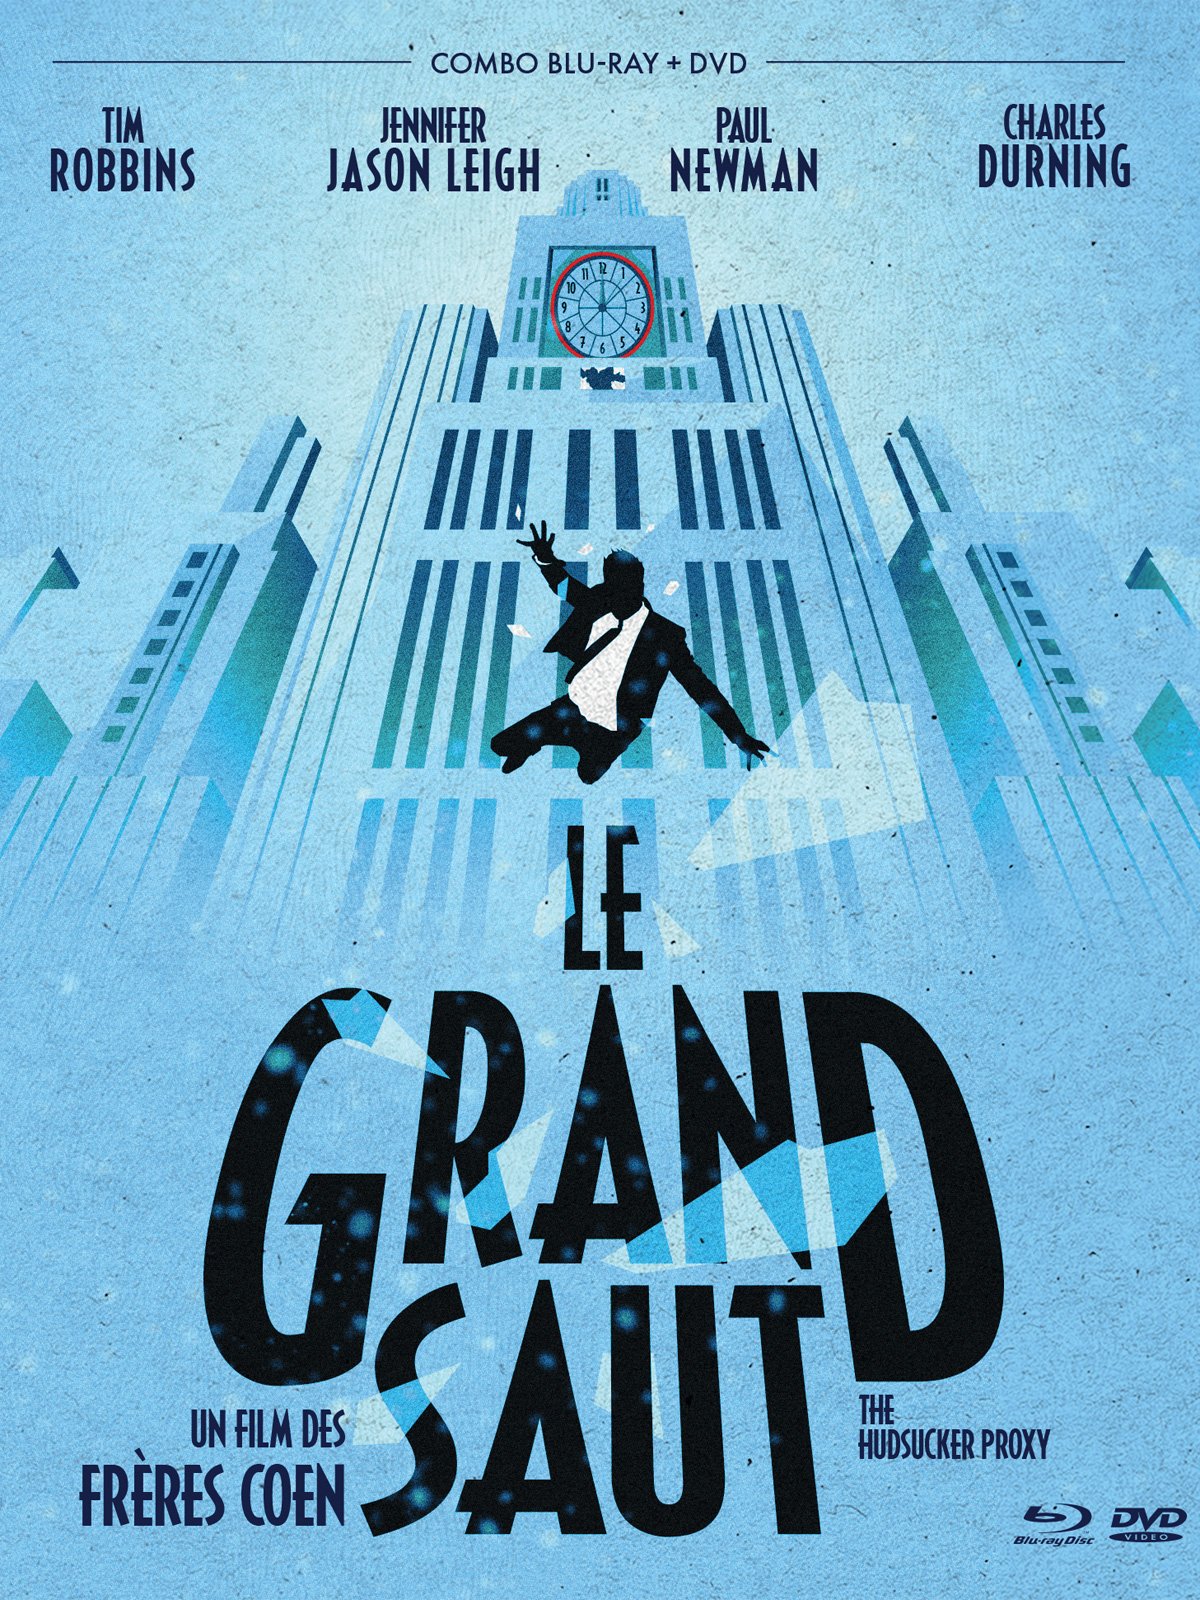 Dernières Critiques du film Le Grand saut - AlloCiné